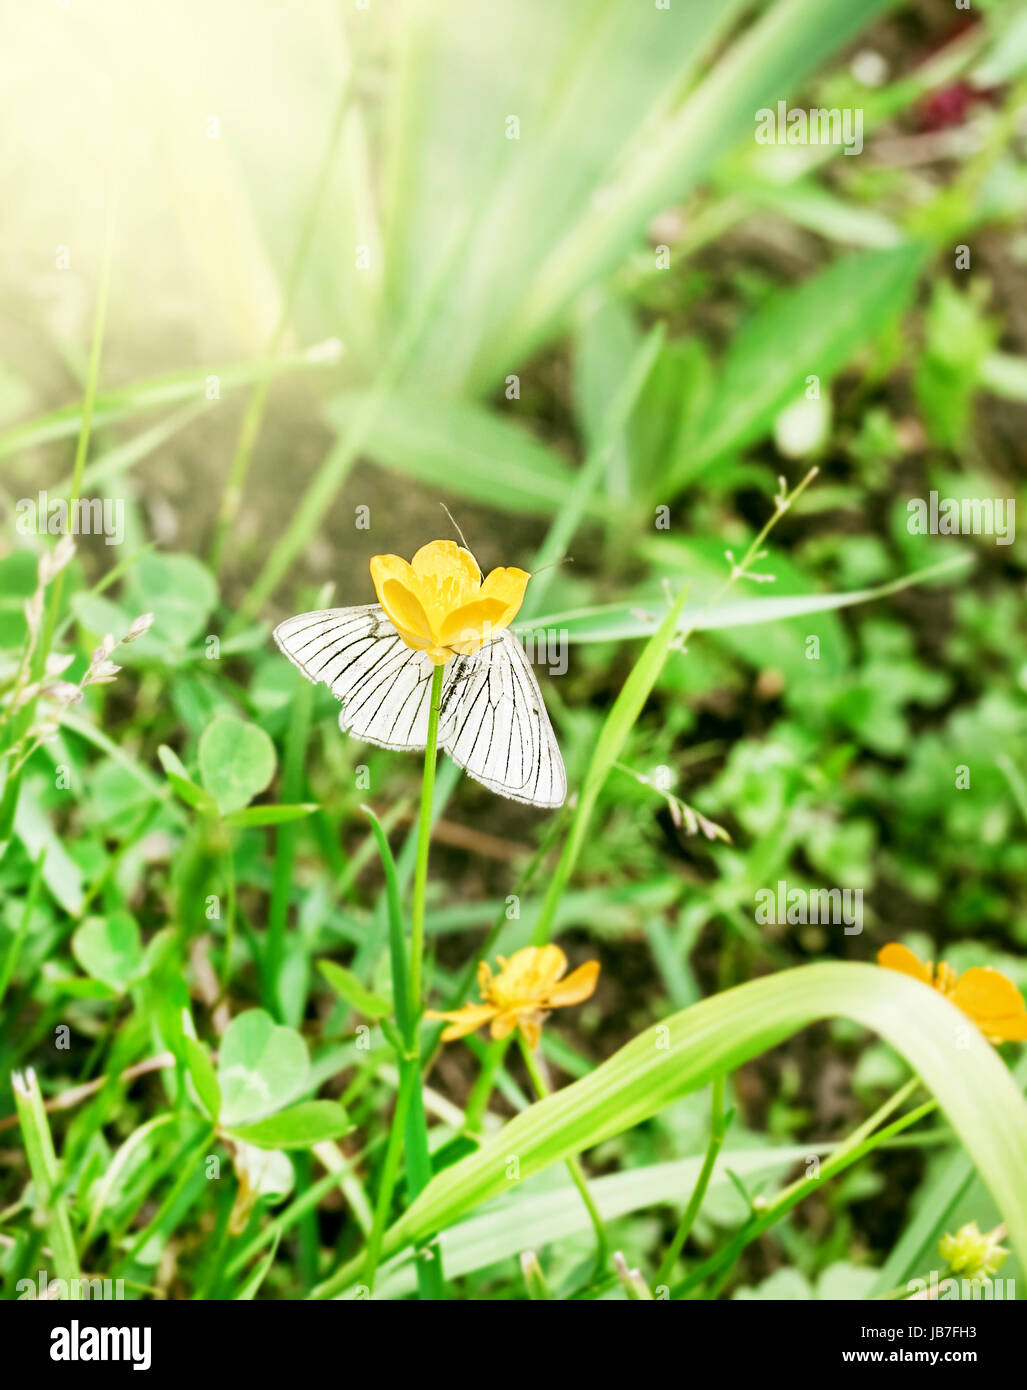 Gara a farfalla bianca nasconde su fiore giallo Foto Stock